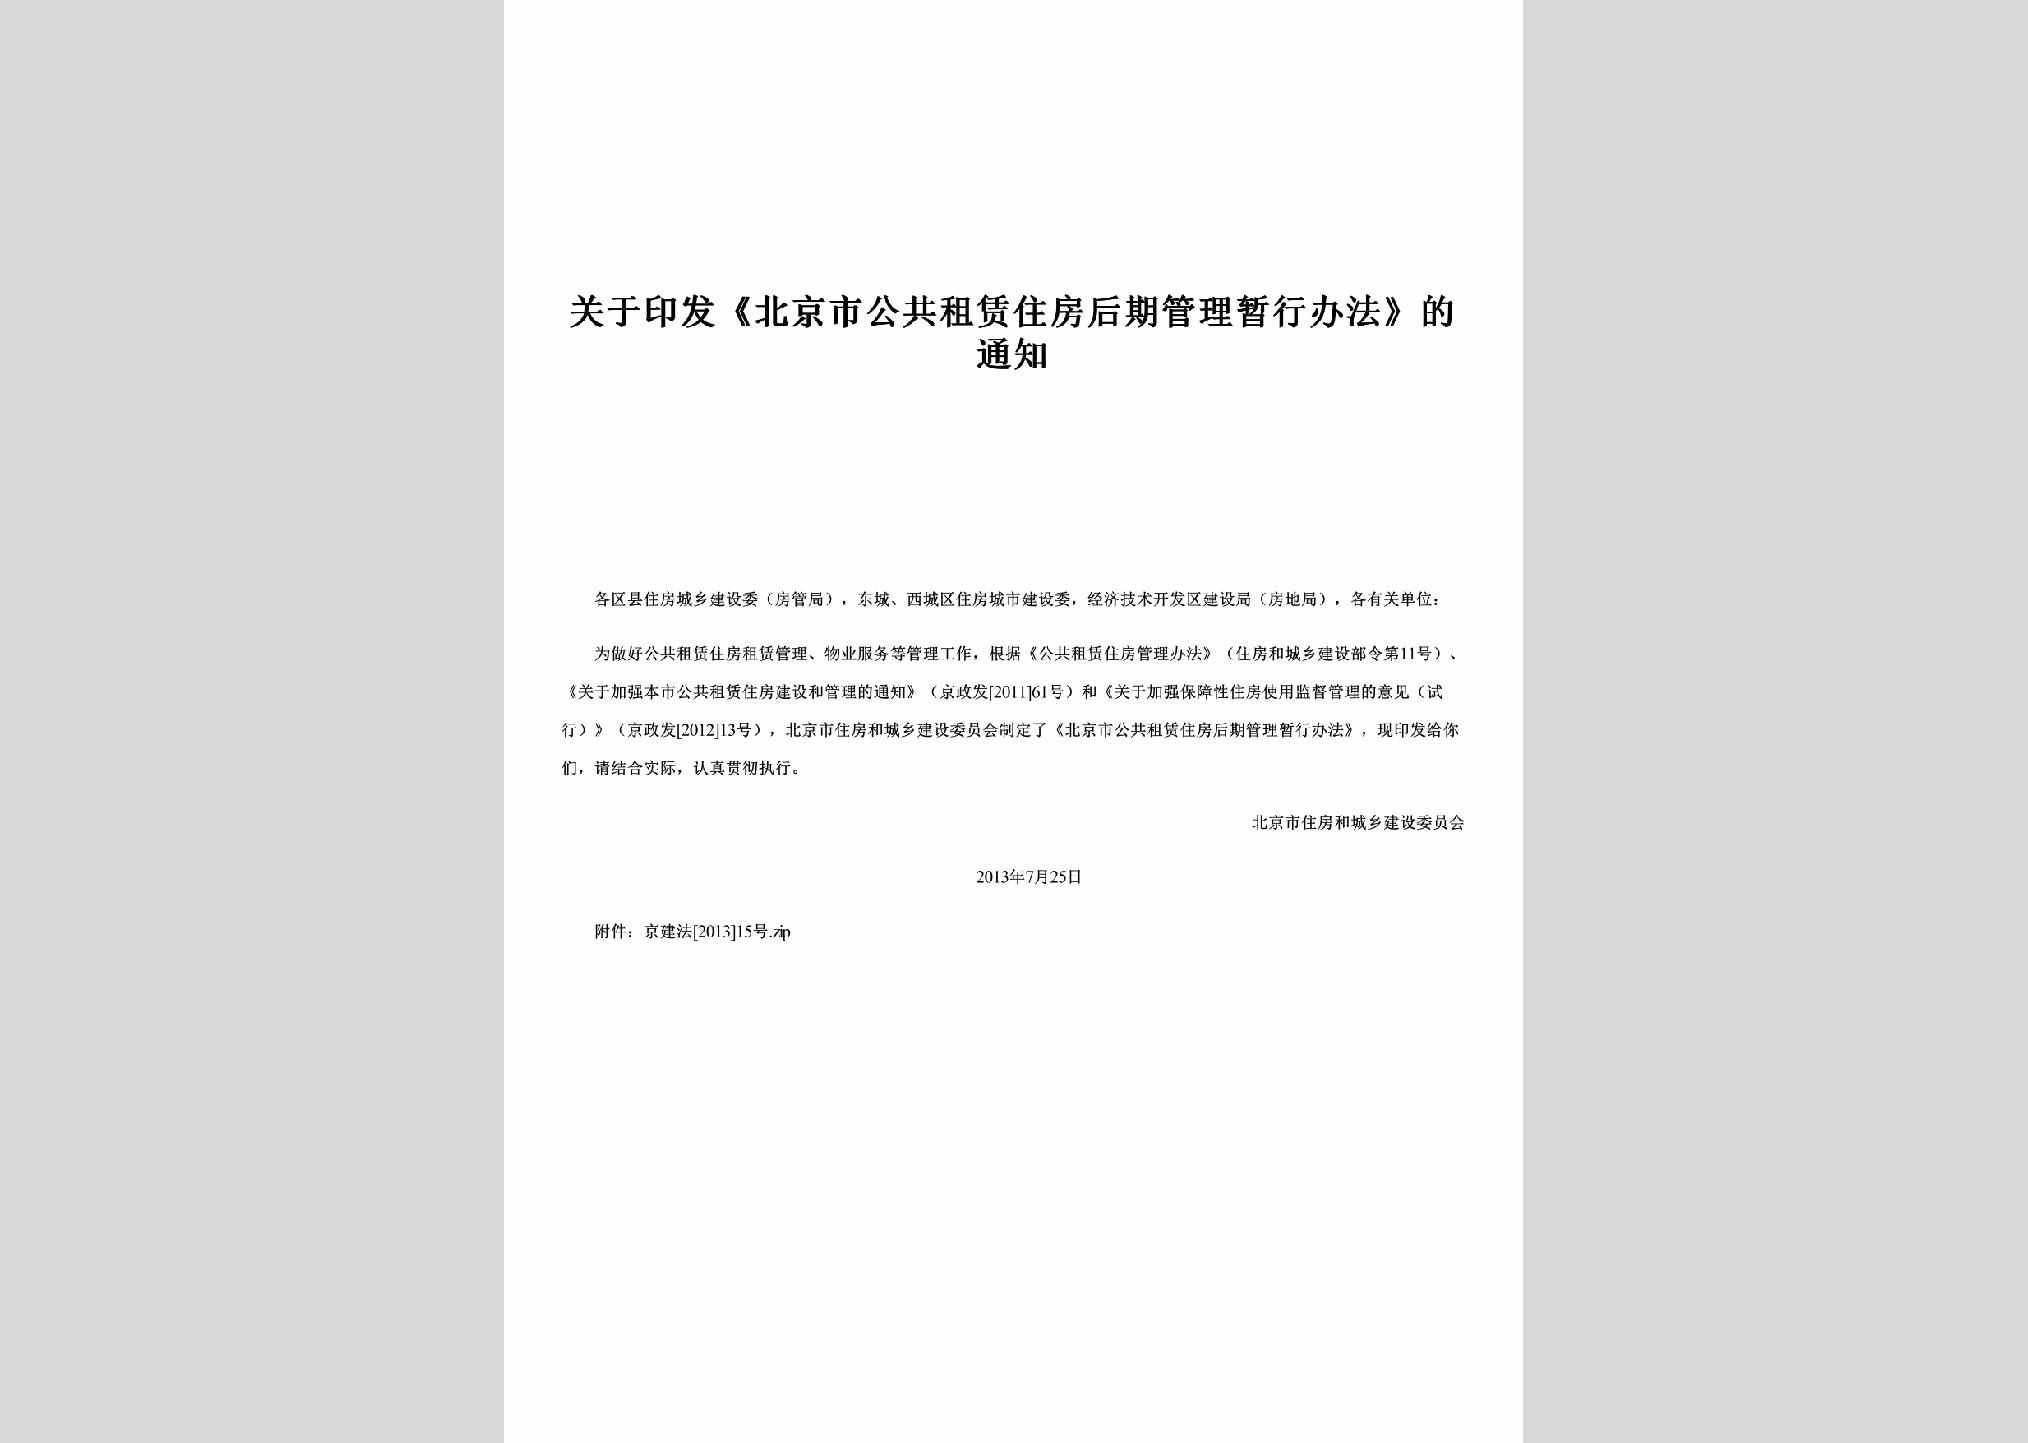 BJ-ZLZFGLBF-2013：关于印发《北京市公共租赁住房后期管理暂行办法》的通知